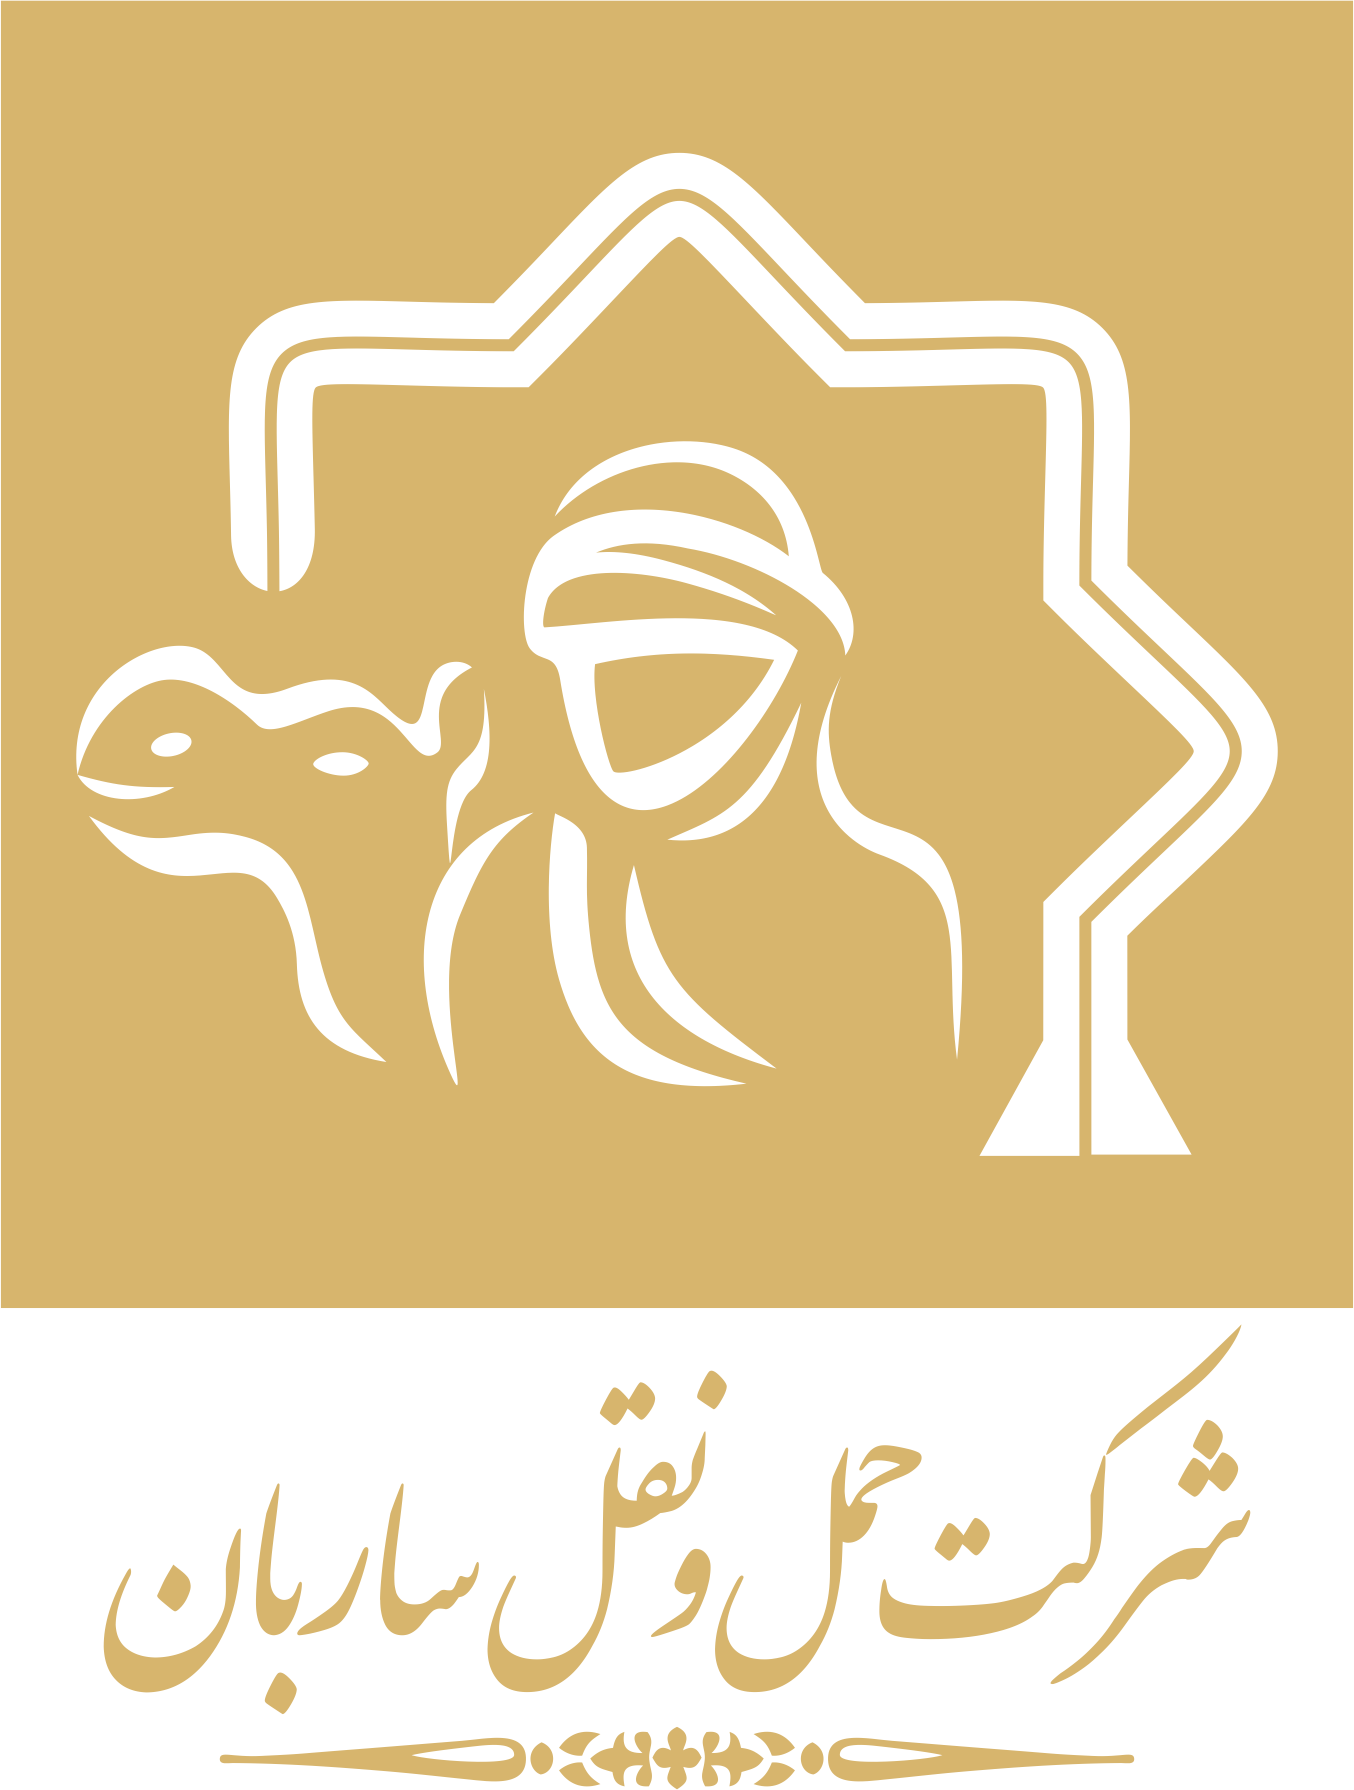 بارنامه حمل و نقل اصفهان